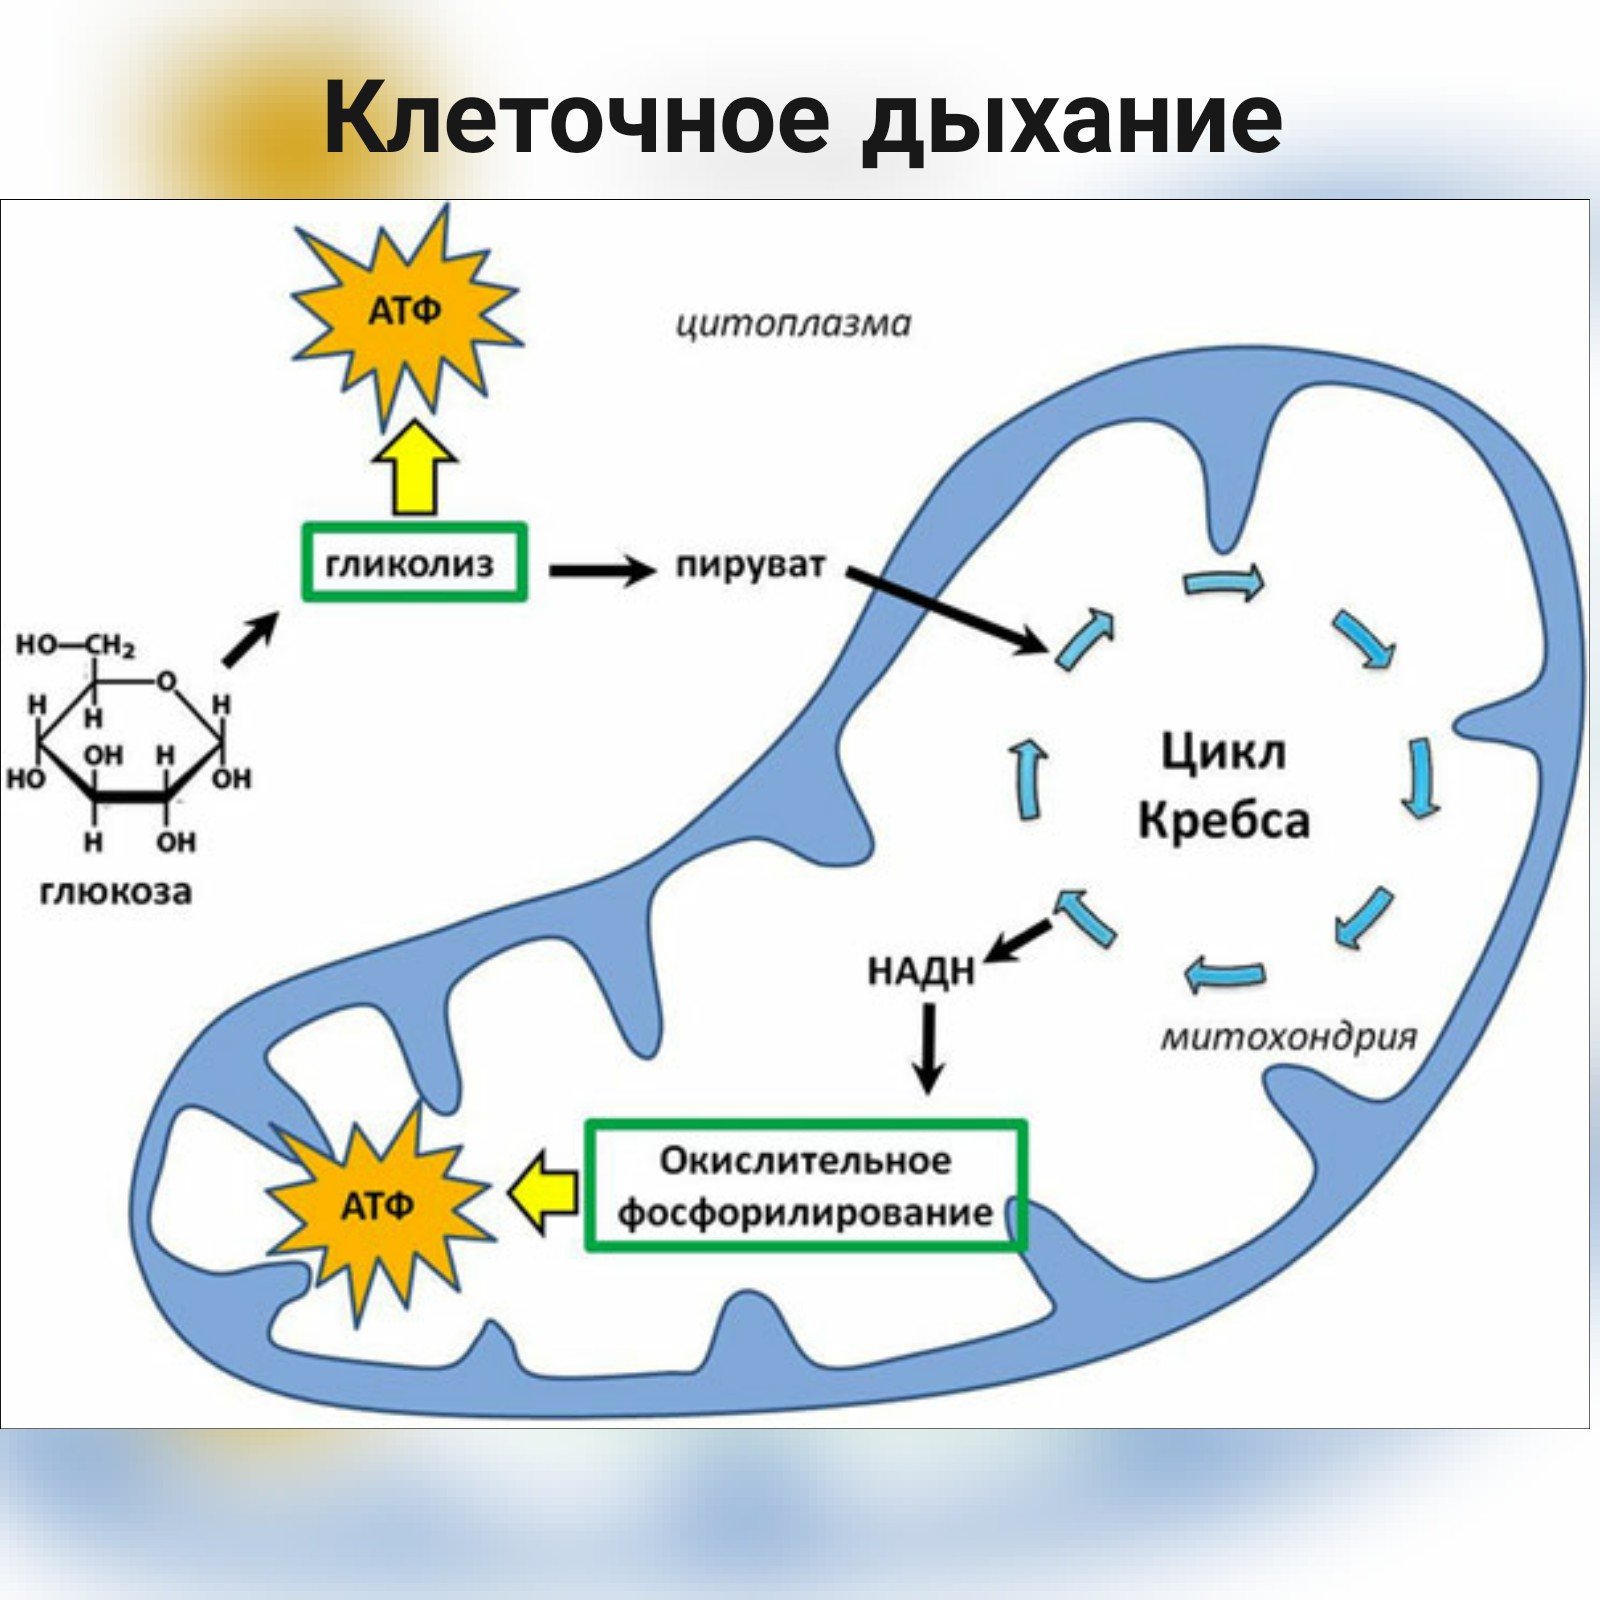 Синтез атф цикл кребса. Схема клеточного дыхания цикл Кребса. Синтез Глюкозы в митохондриях. Энергетический обмен в митохондриях схема.